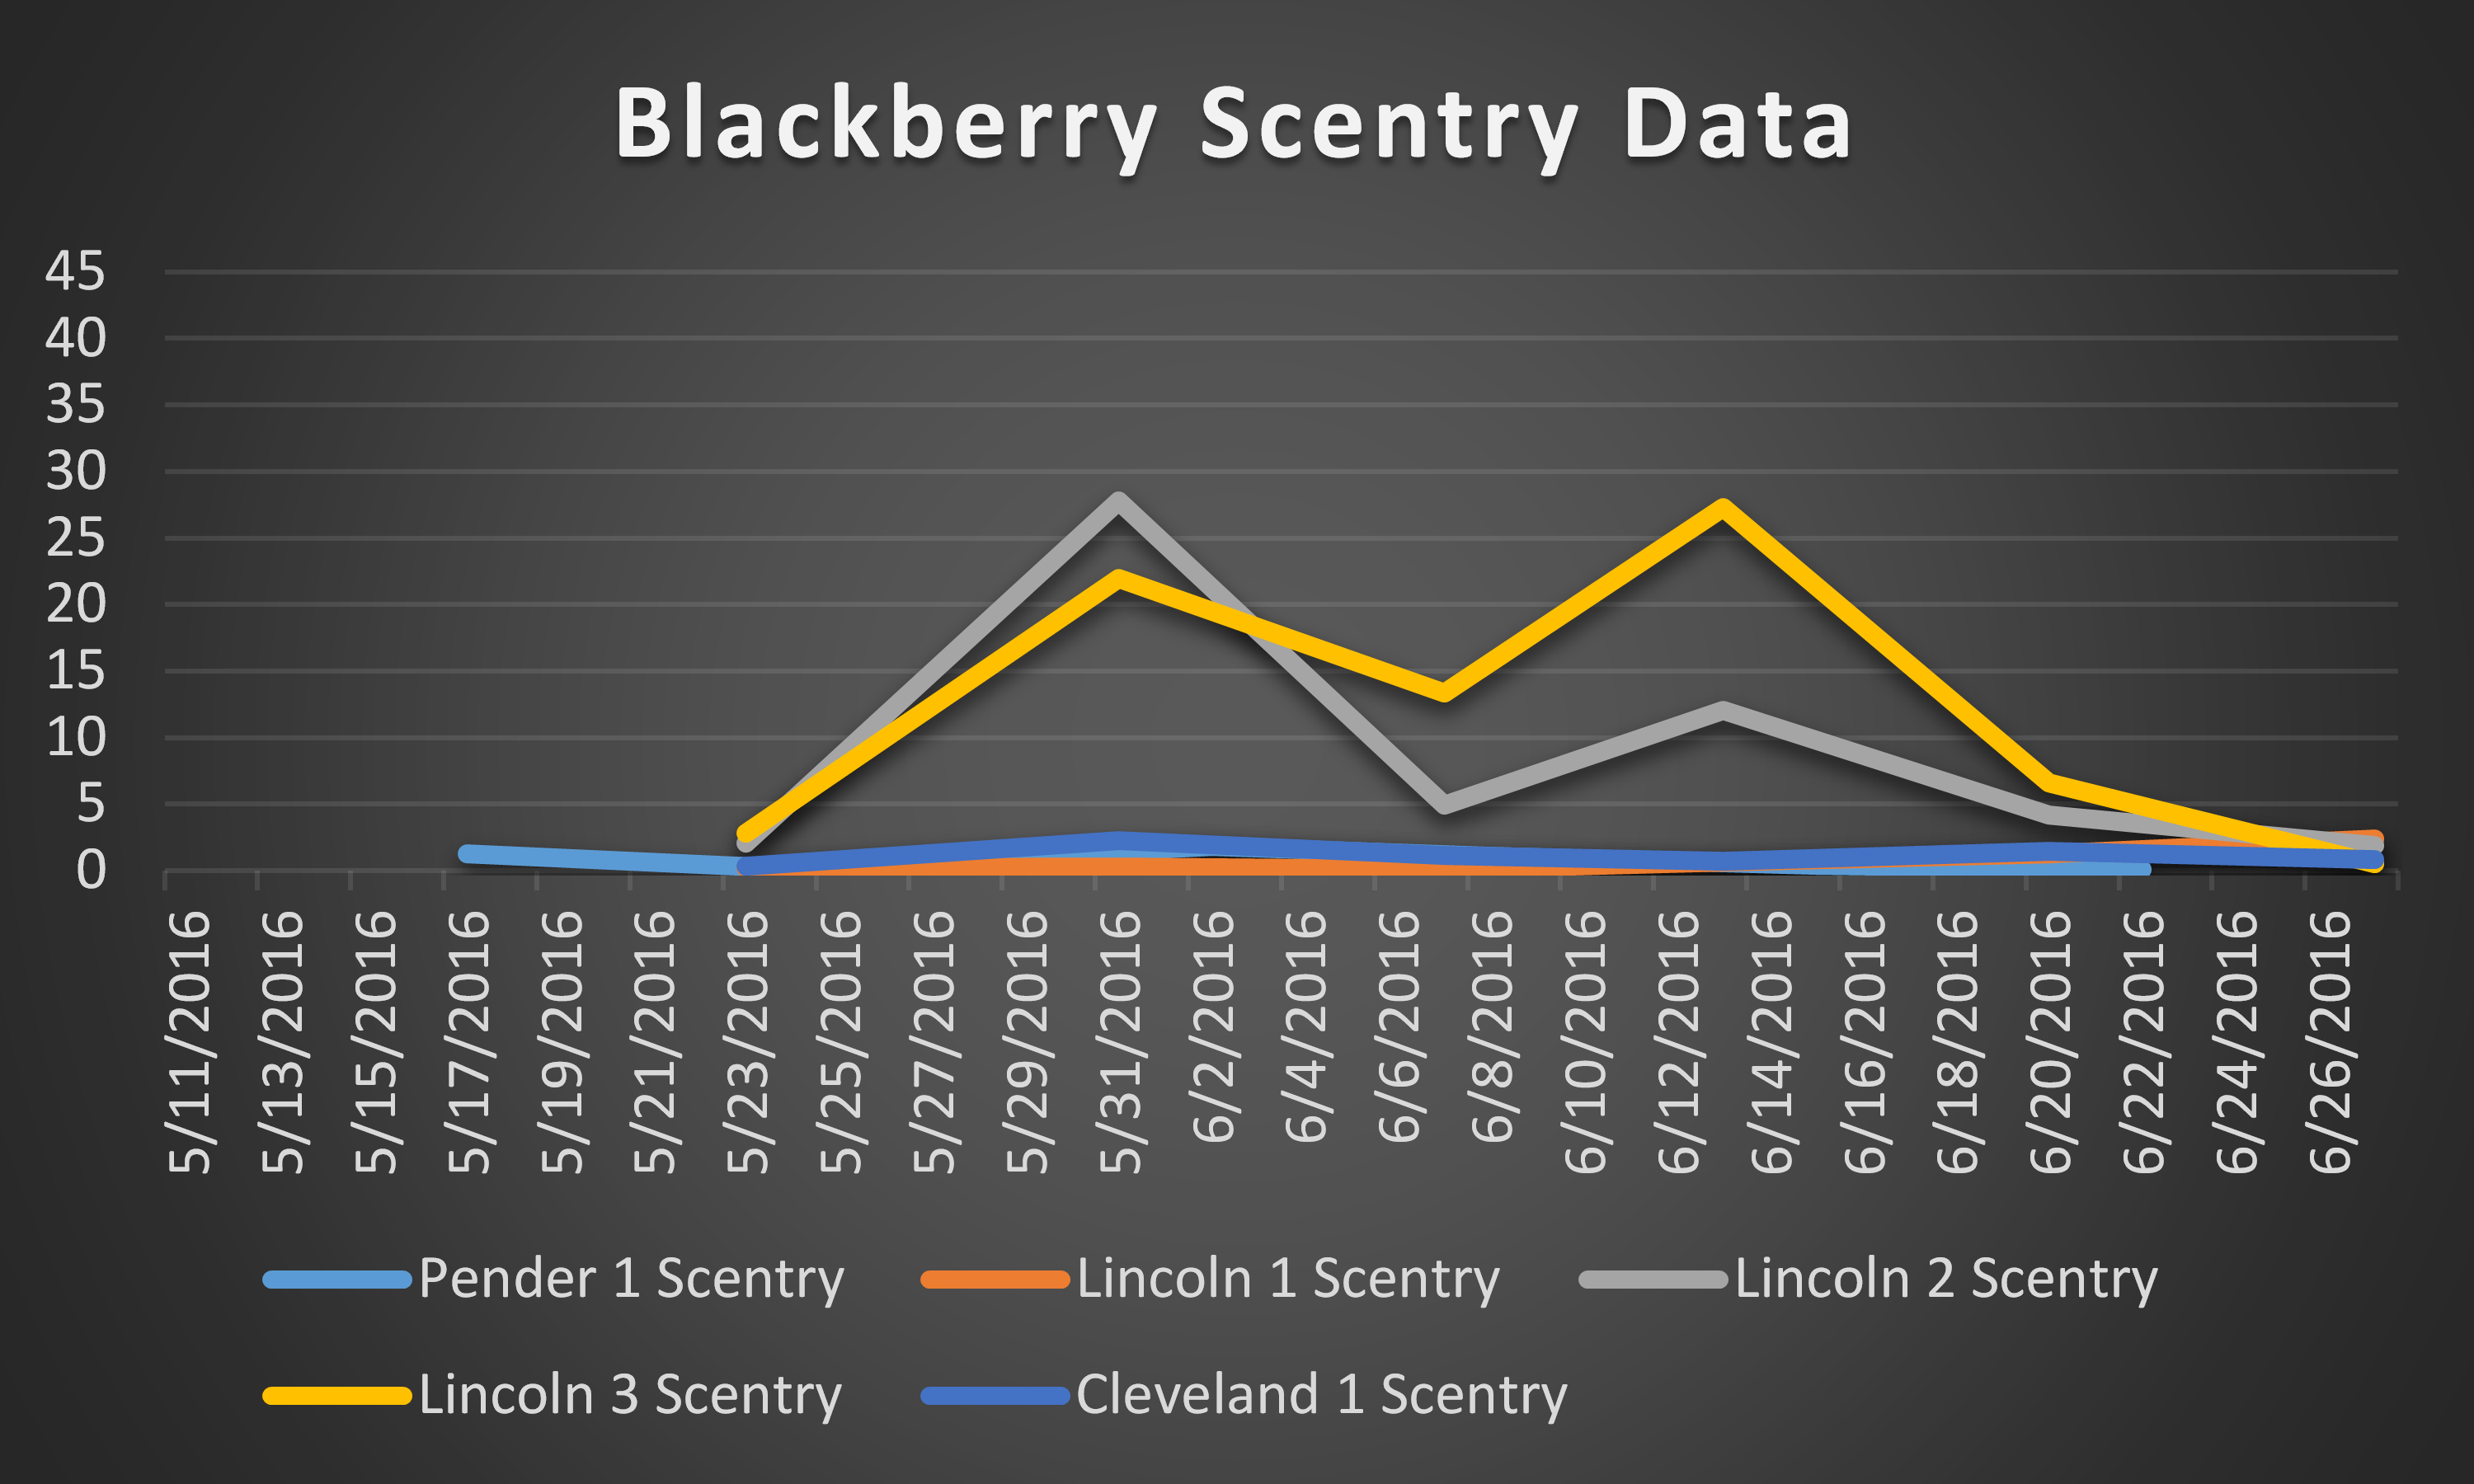 2016 blackberry scentry data